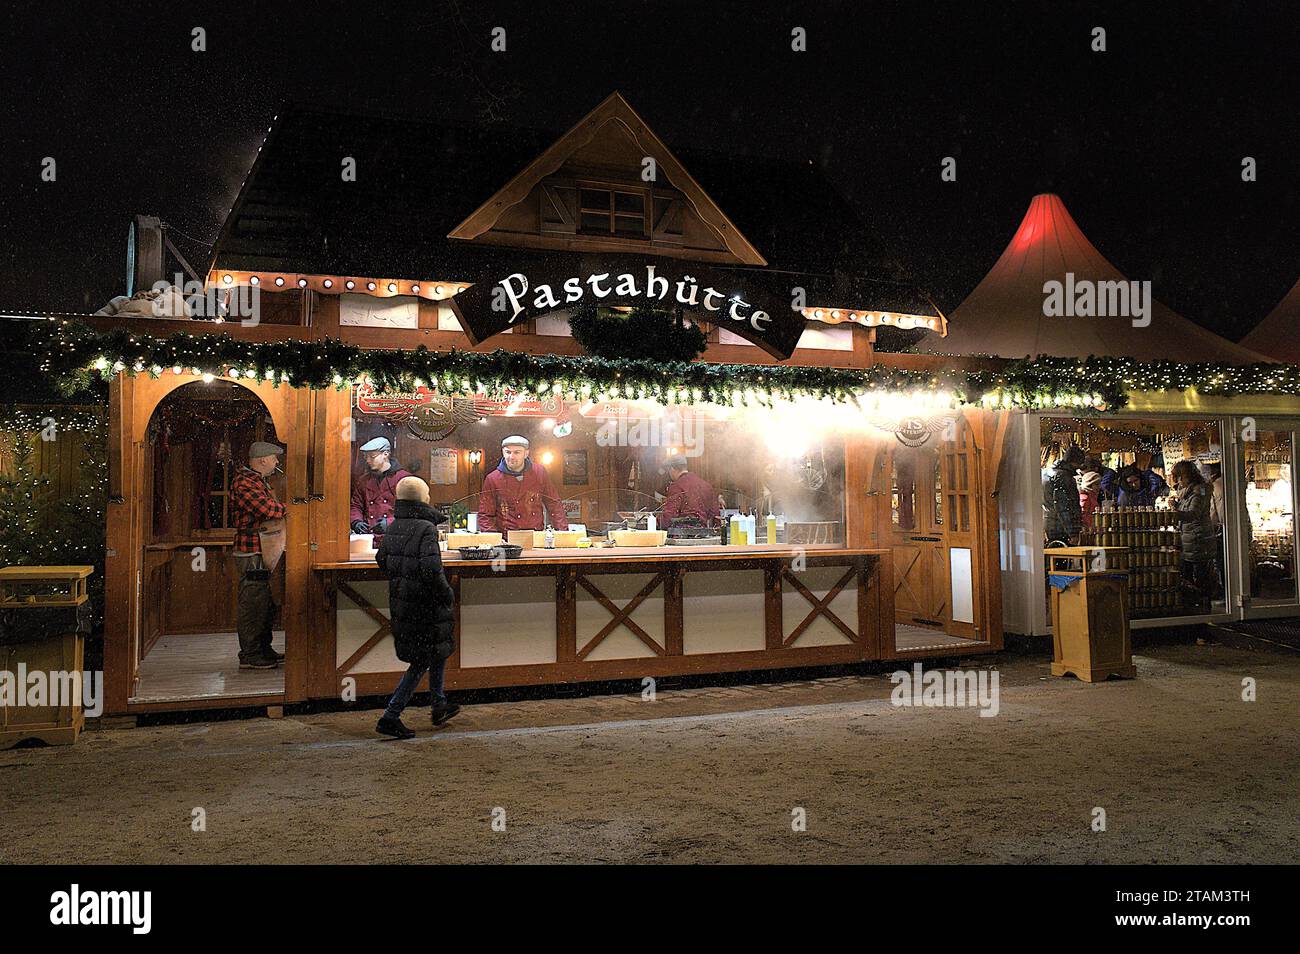 Pastahütte in un mercatino di Natale al Castello di Charlottenburg, mentre nevica a Berlino, Germania pt. 2 Foto Stock